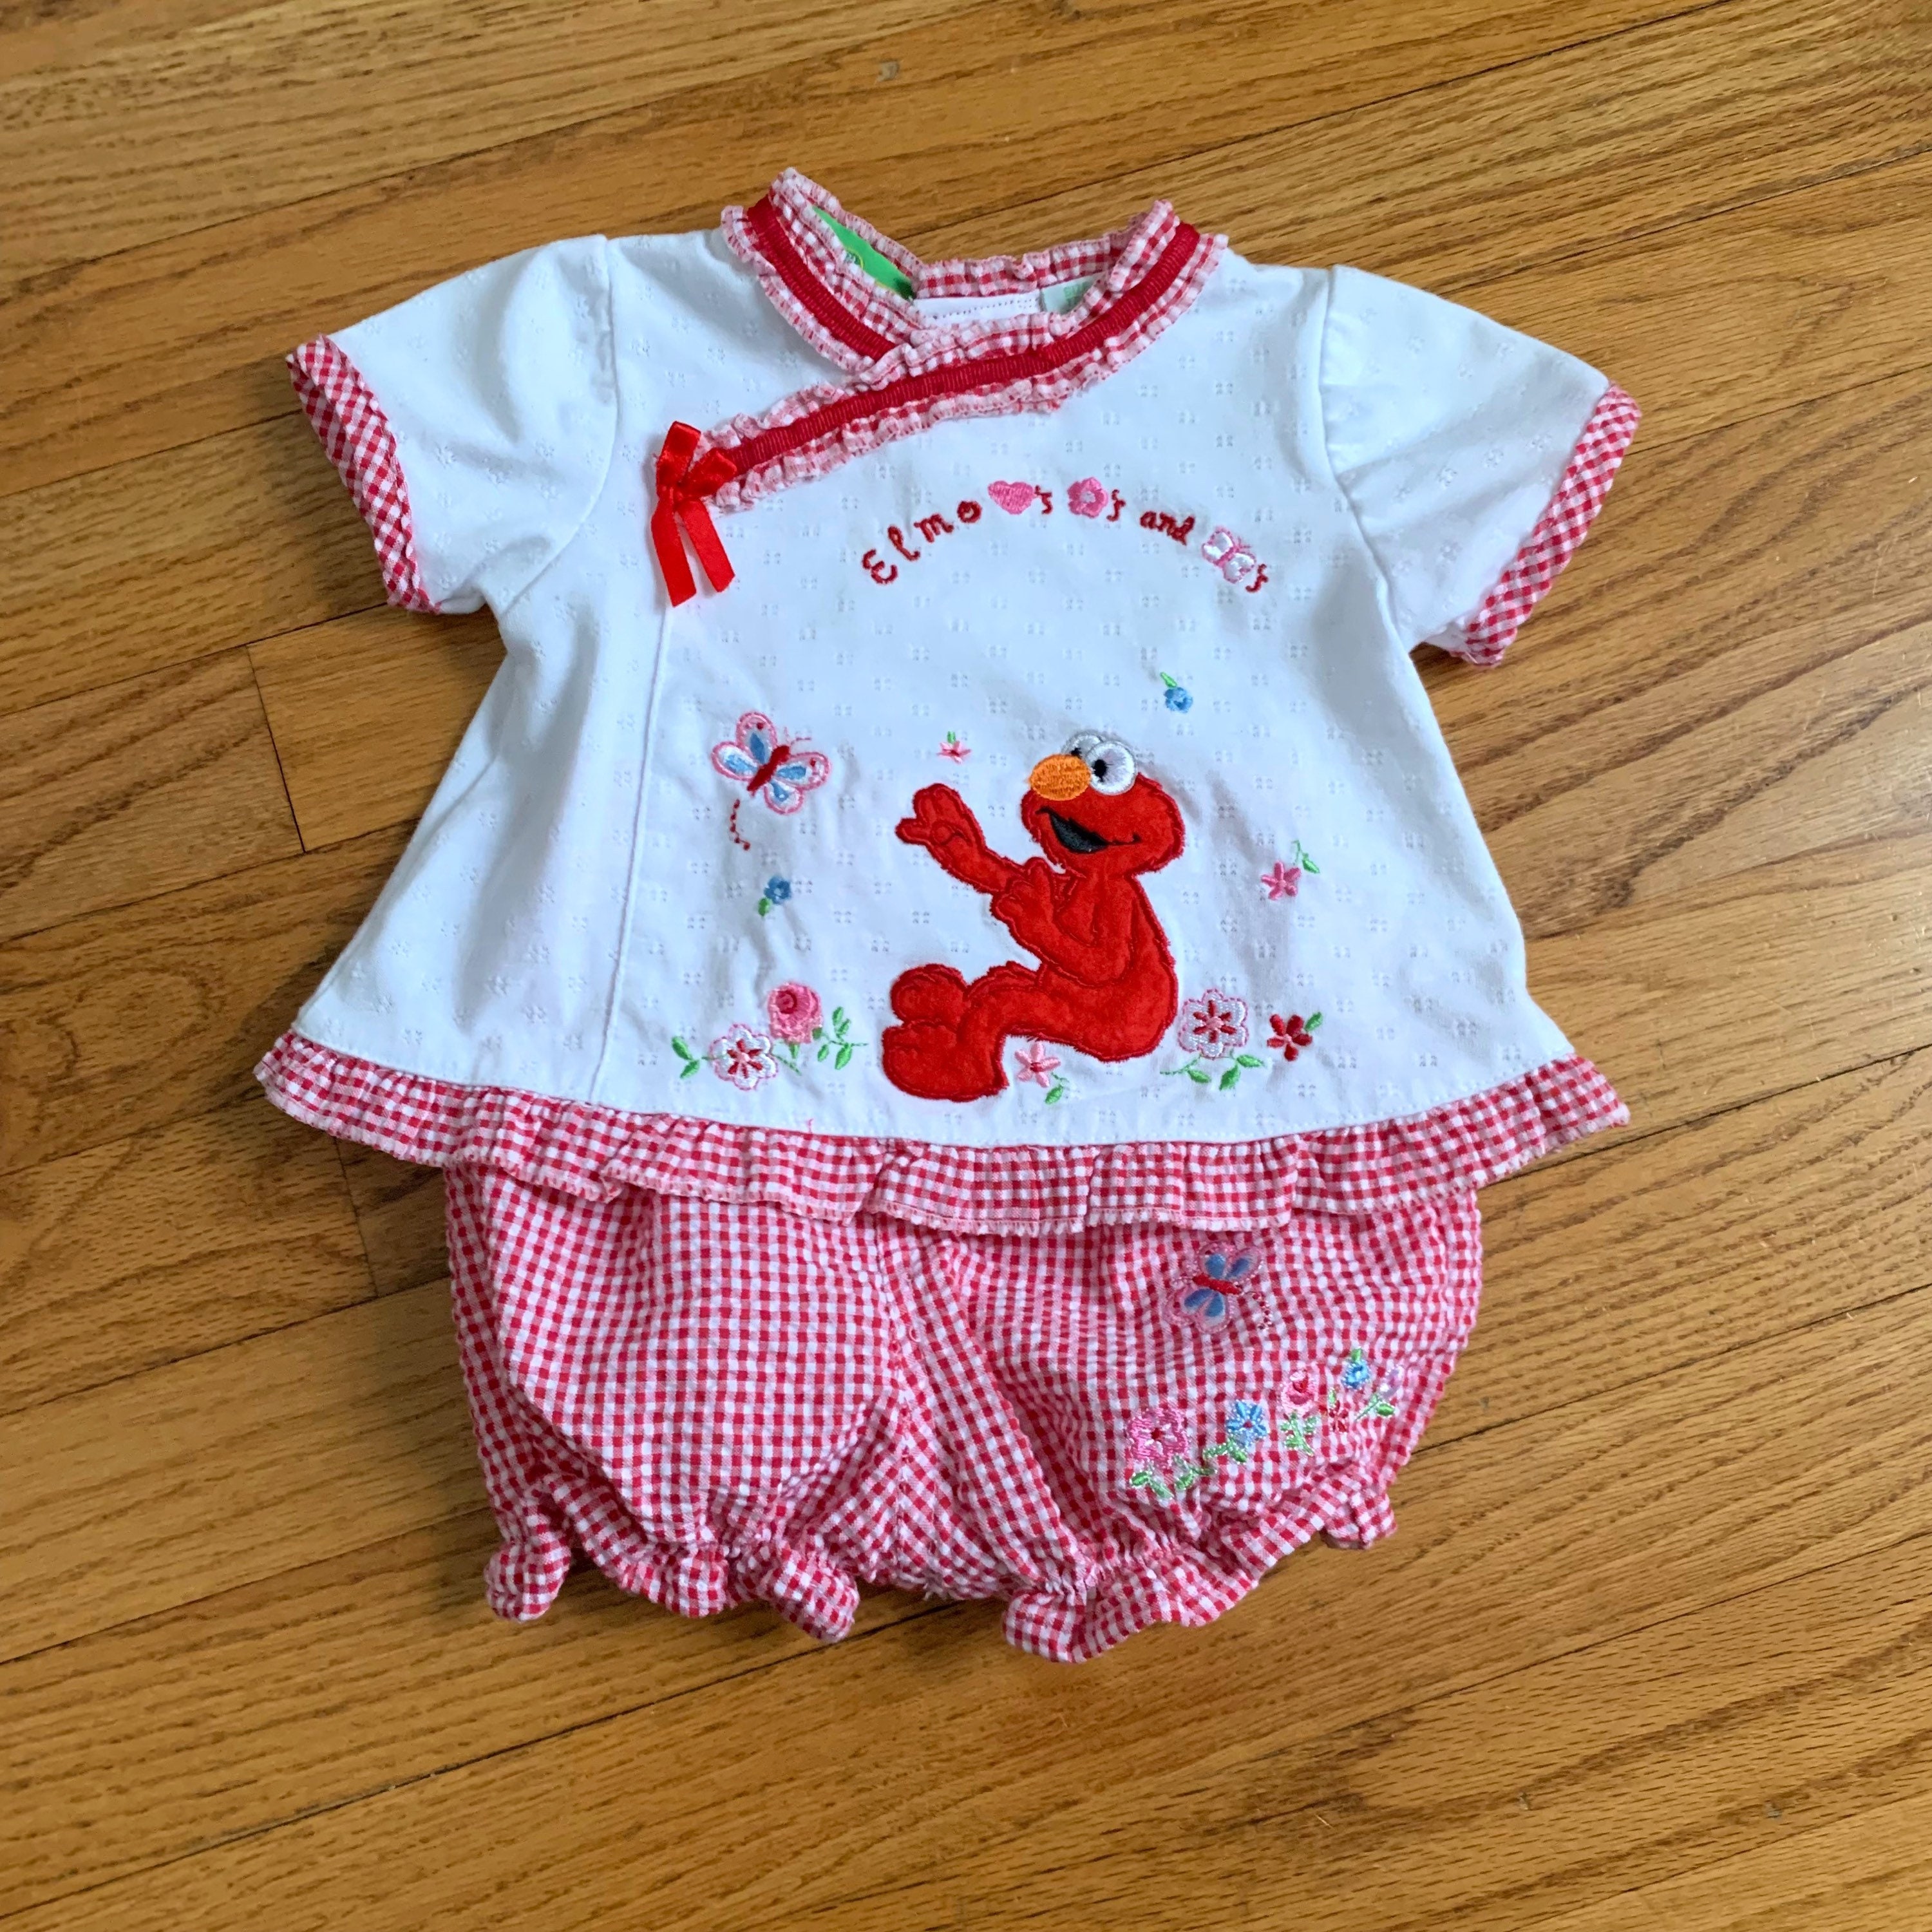 slogan hoeveelheid verkoop wiel Elmo Baby Outfit - Etsy